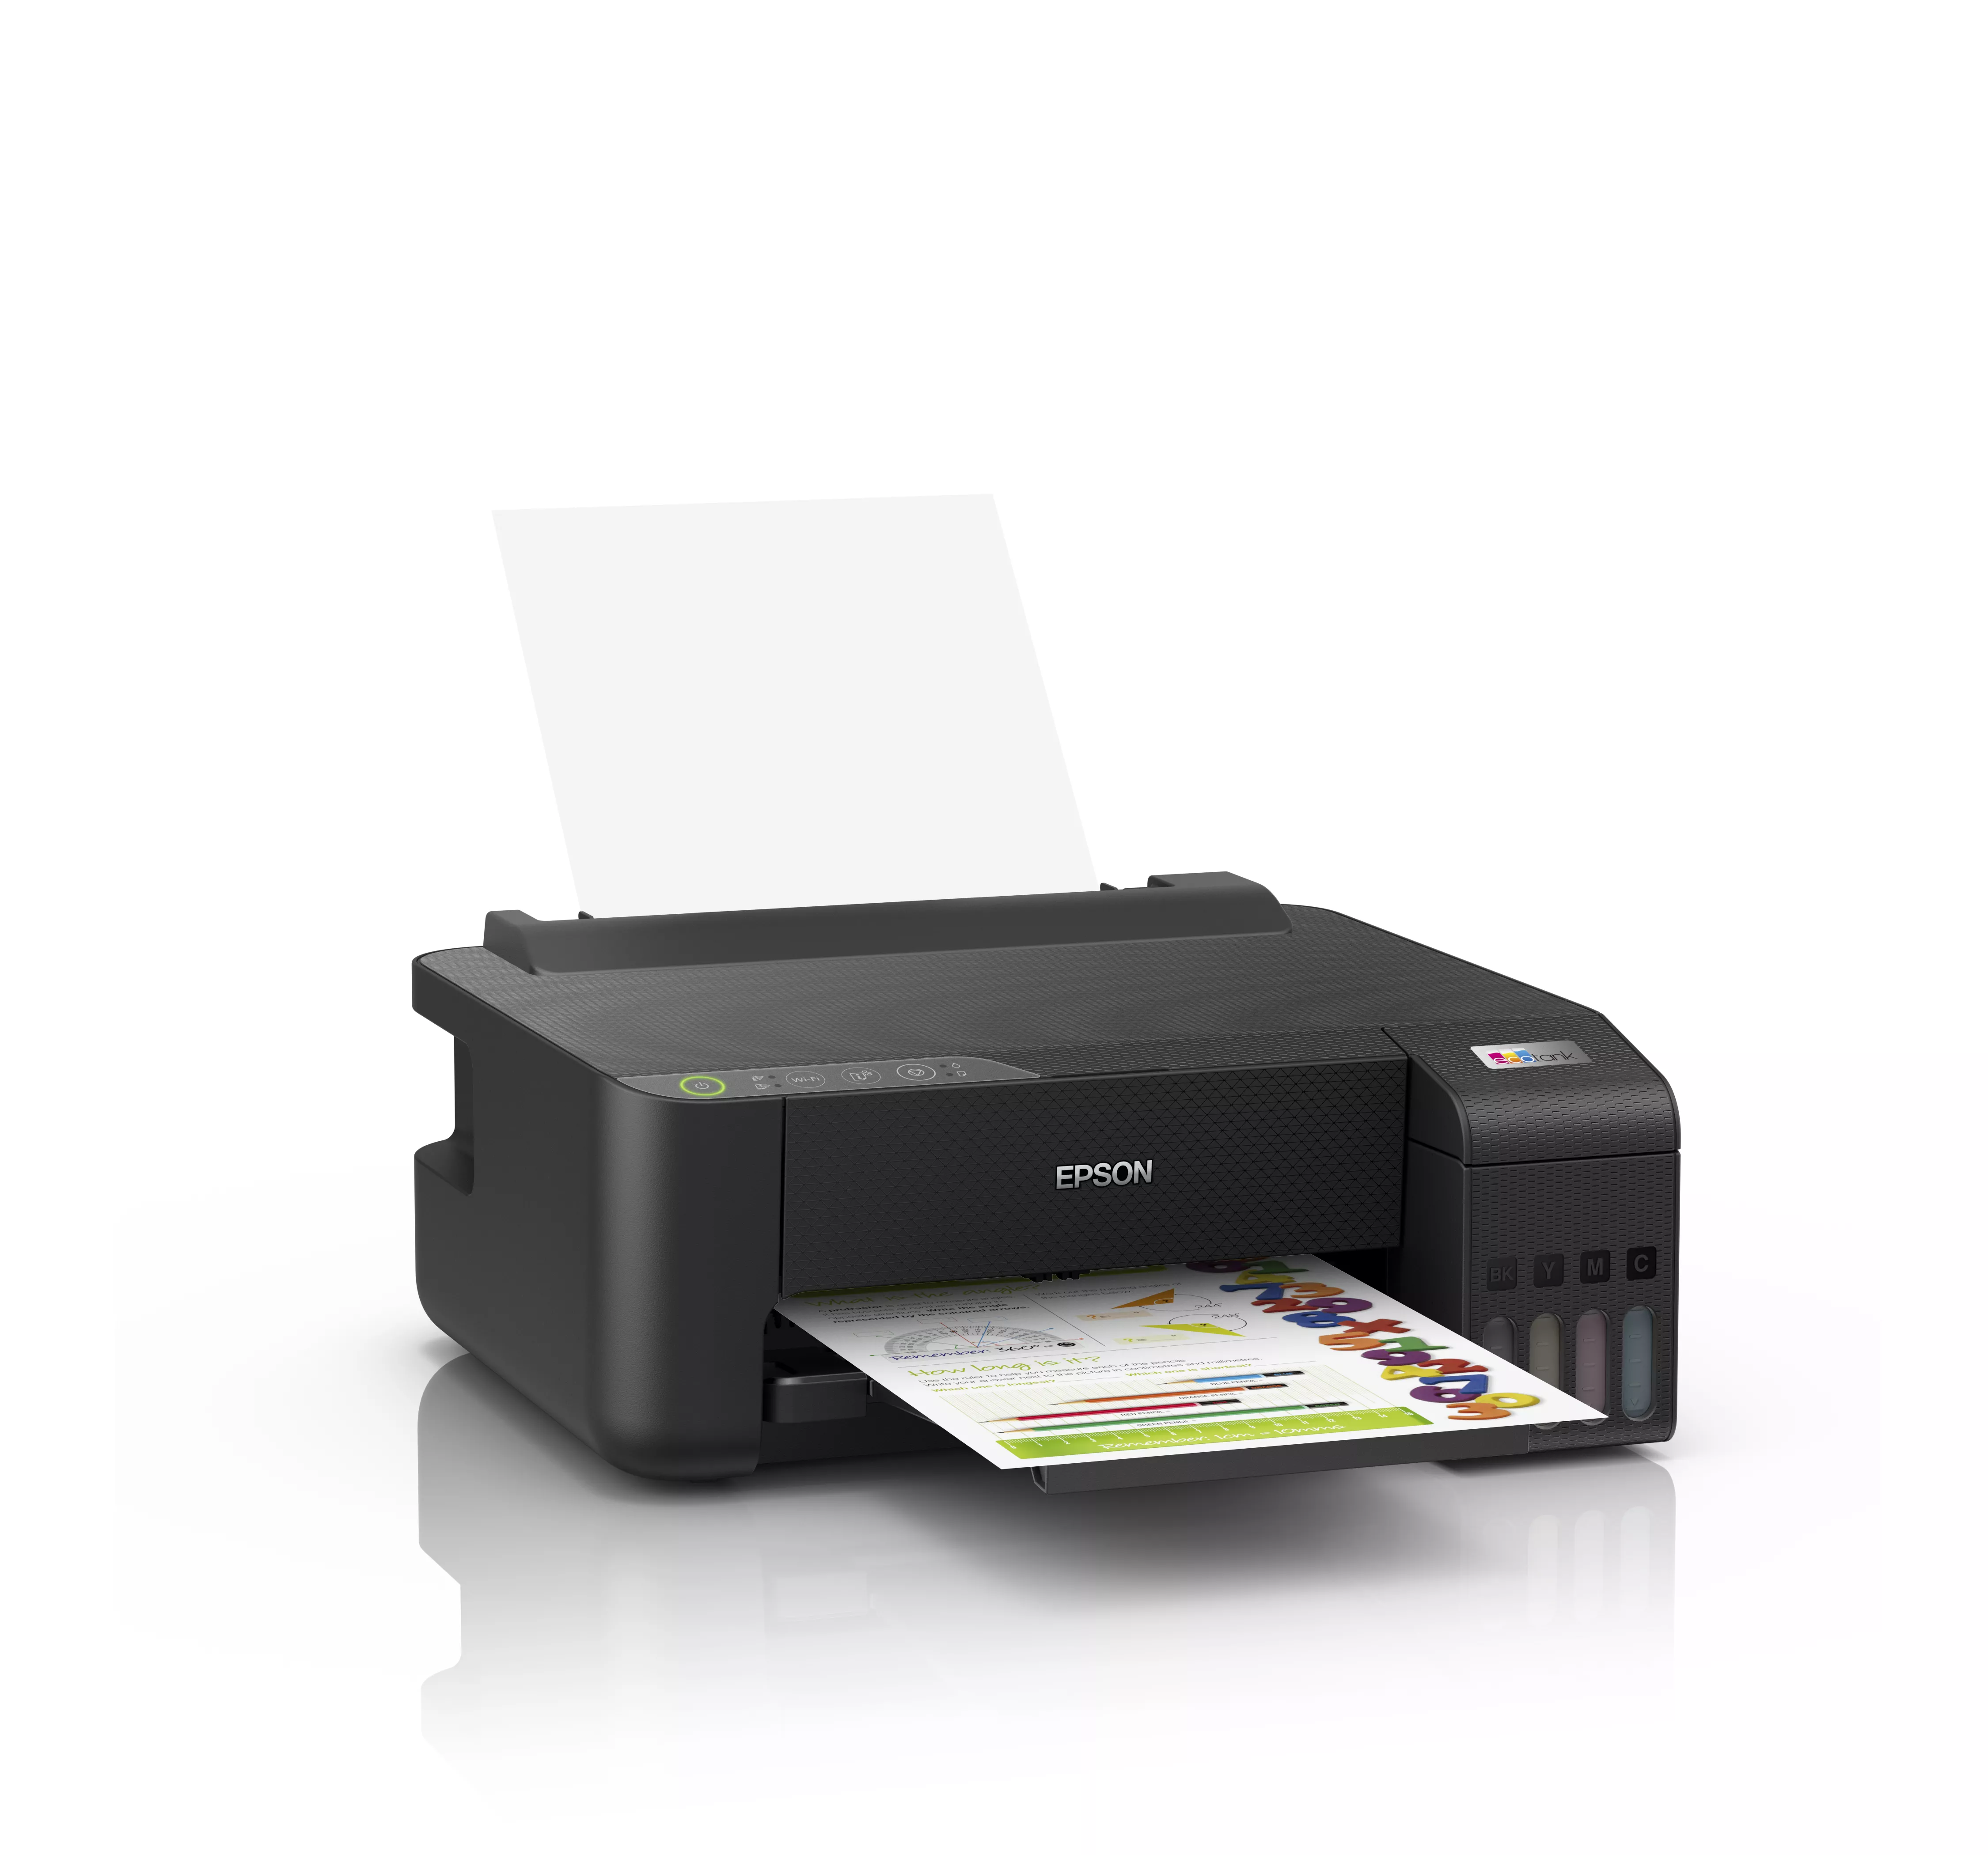 Vente EPSON EcoTank ET-1810 Printer colour ink-jet refillable A4 Epson au meilleur prix - visuel 4